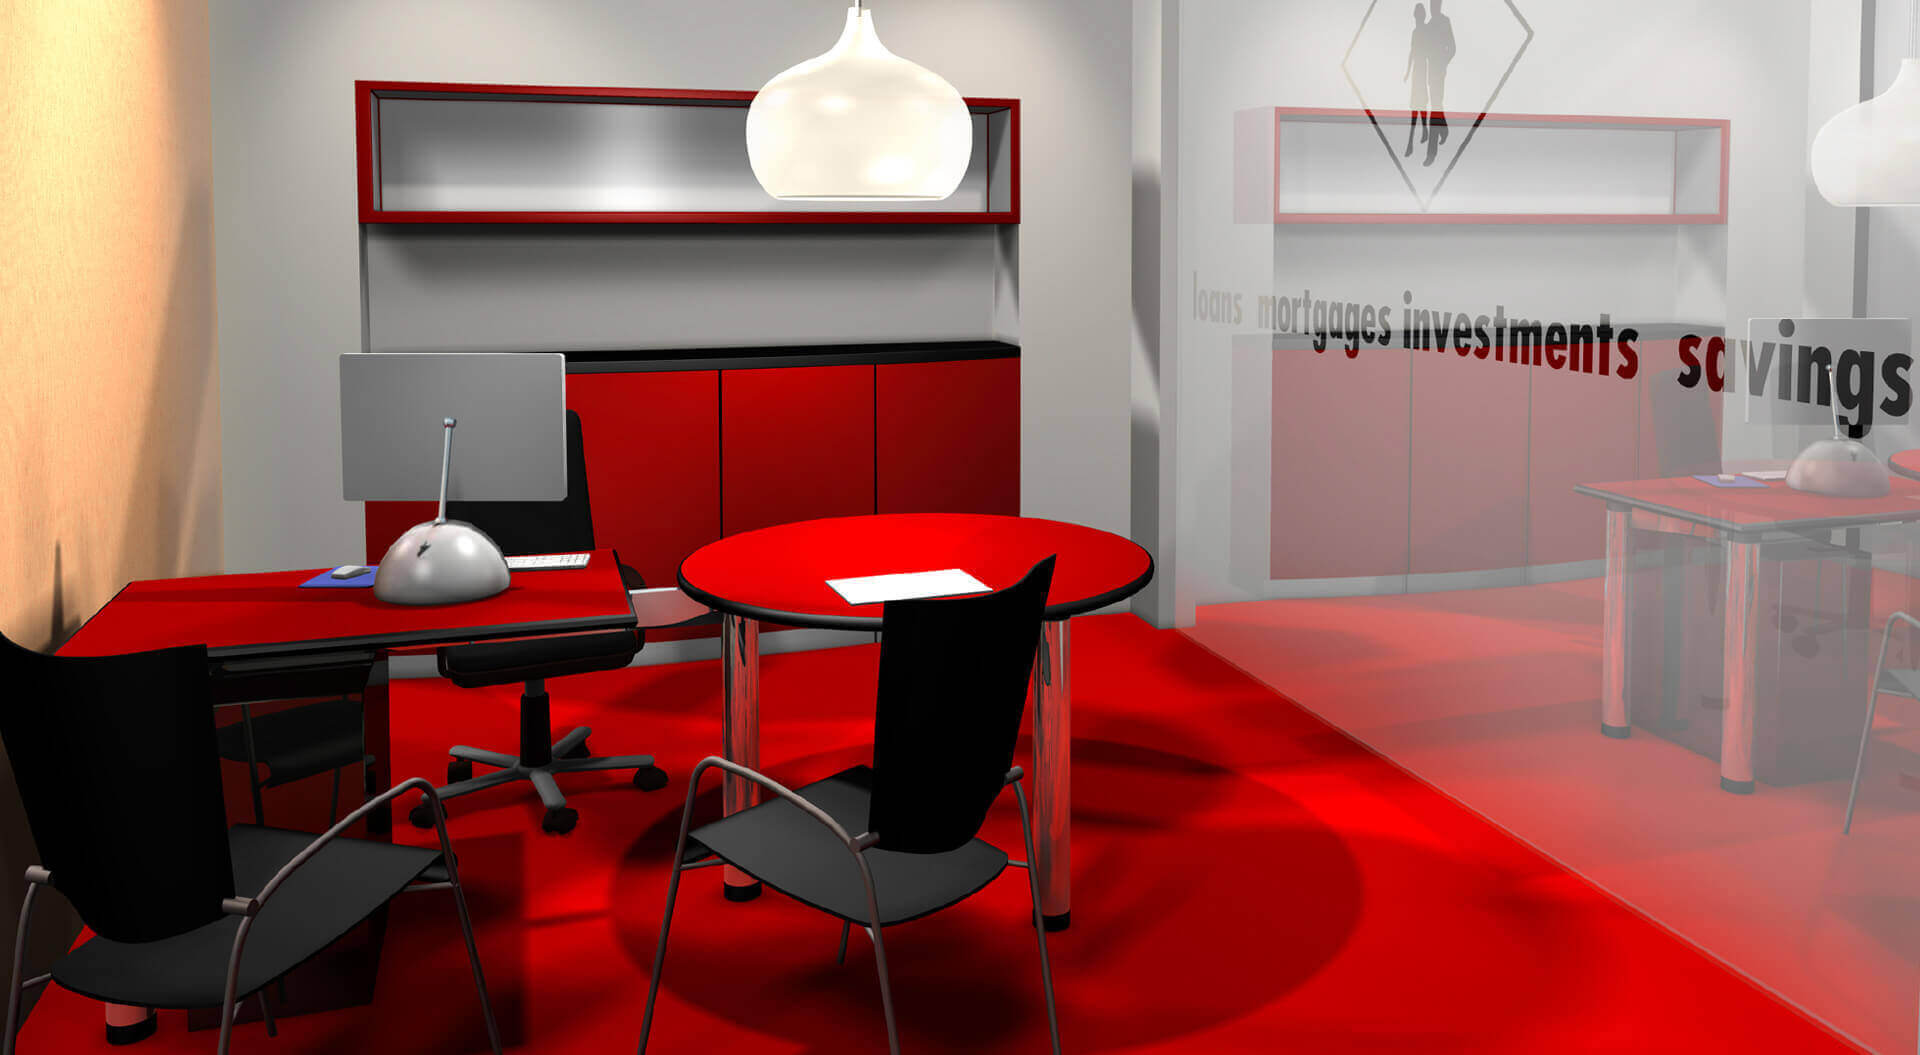 Abbey Bank Consultation Room visual. New mini bank branch rebrand interior design.